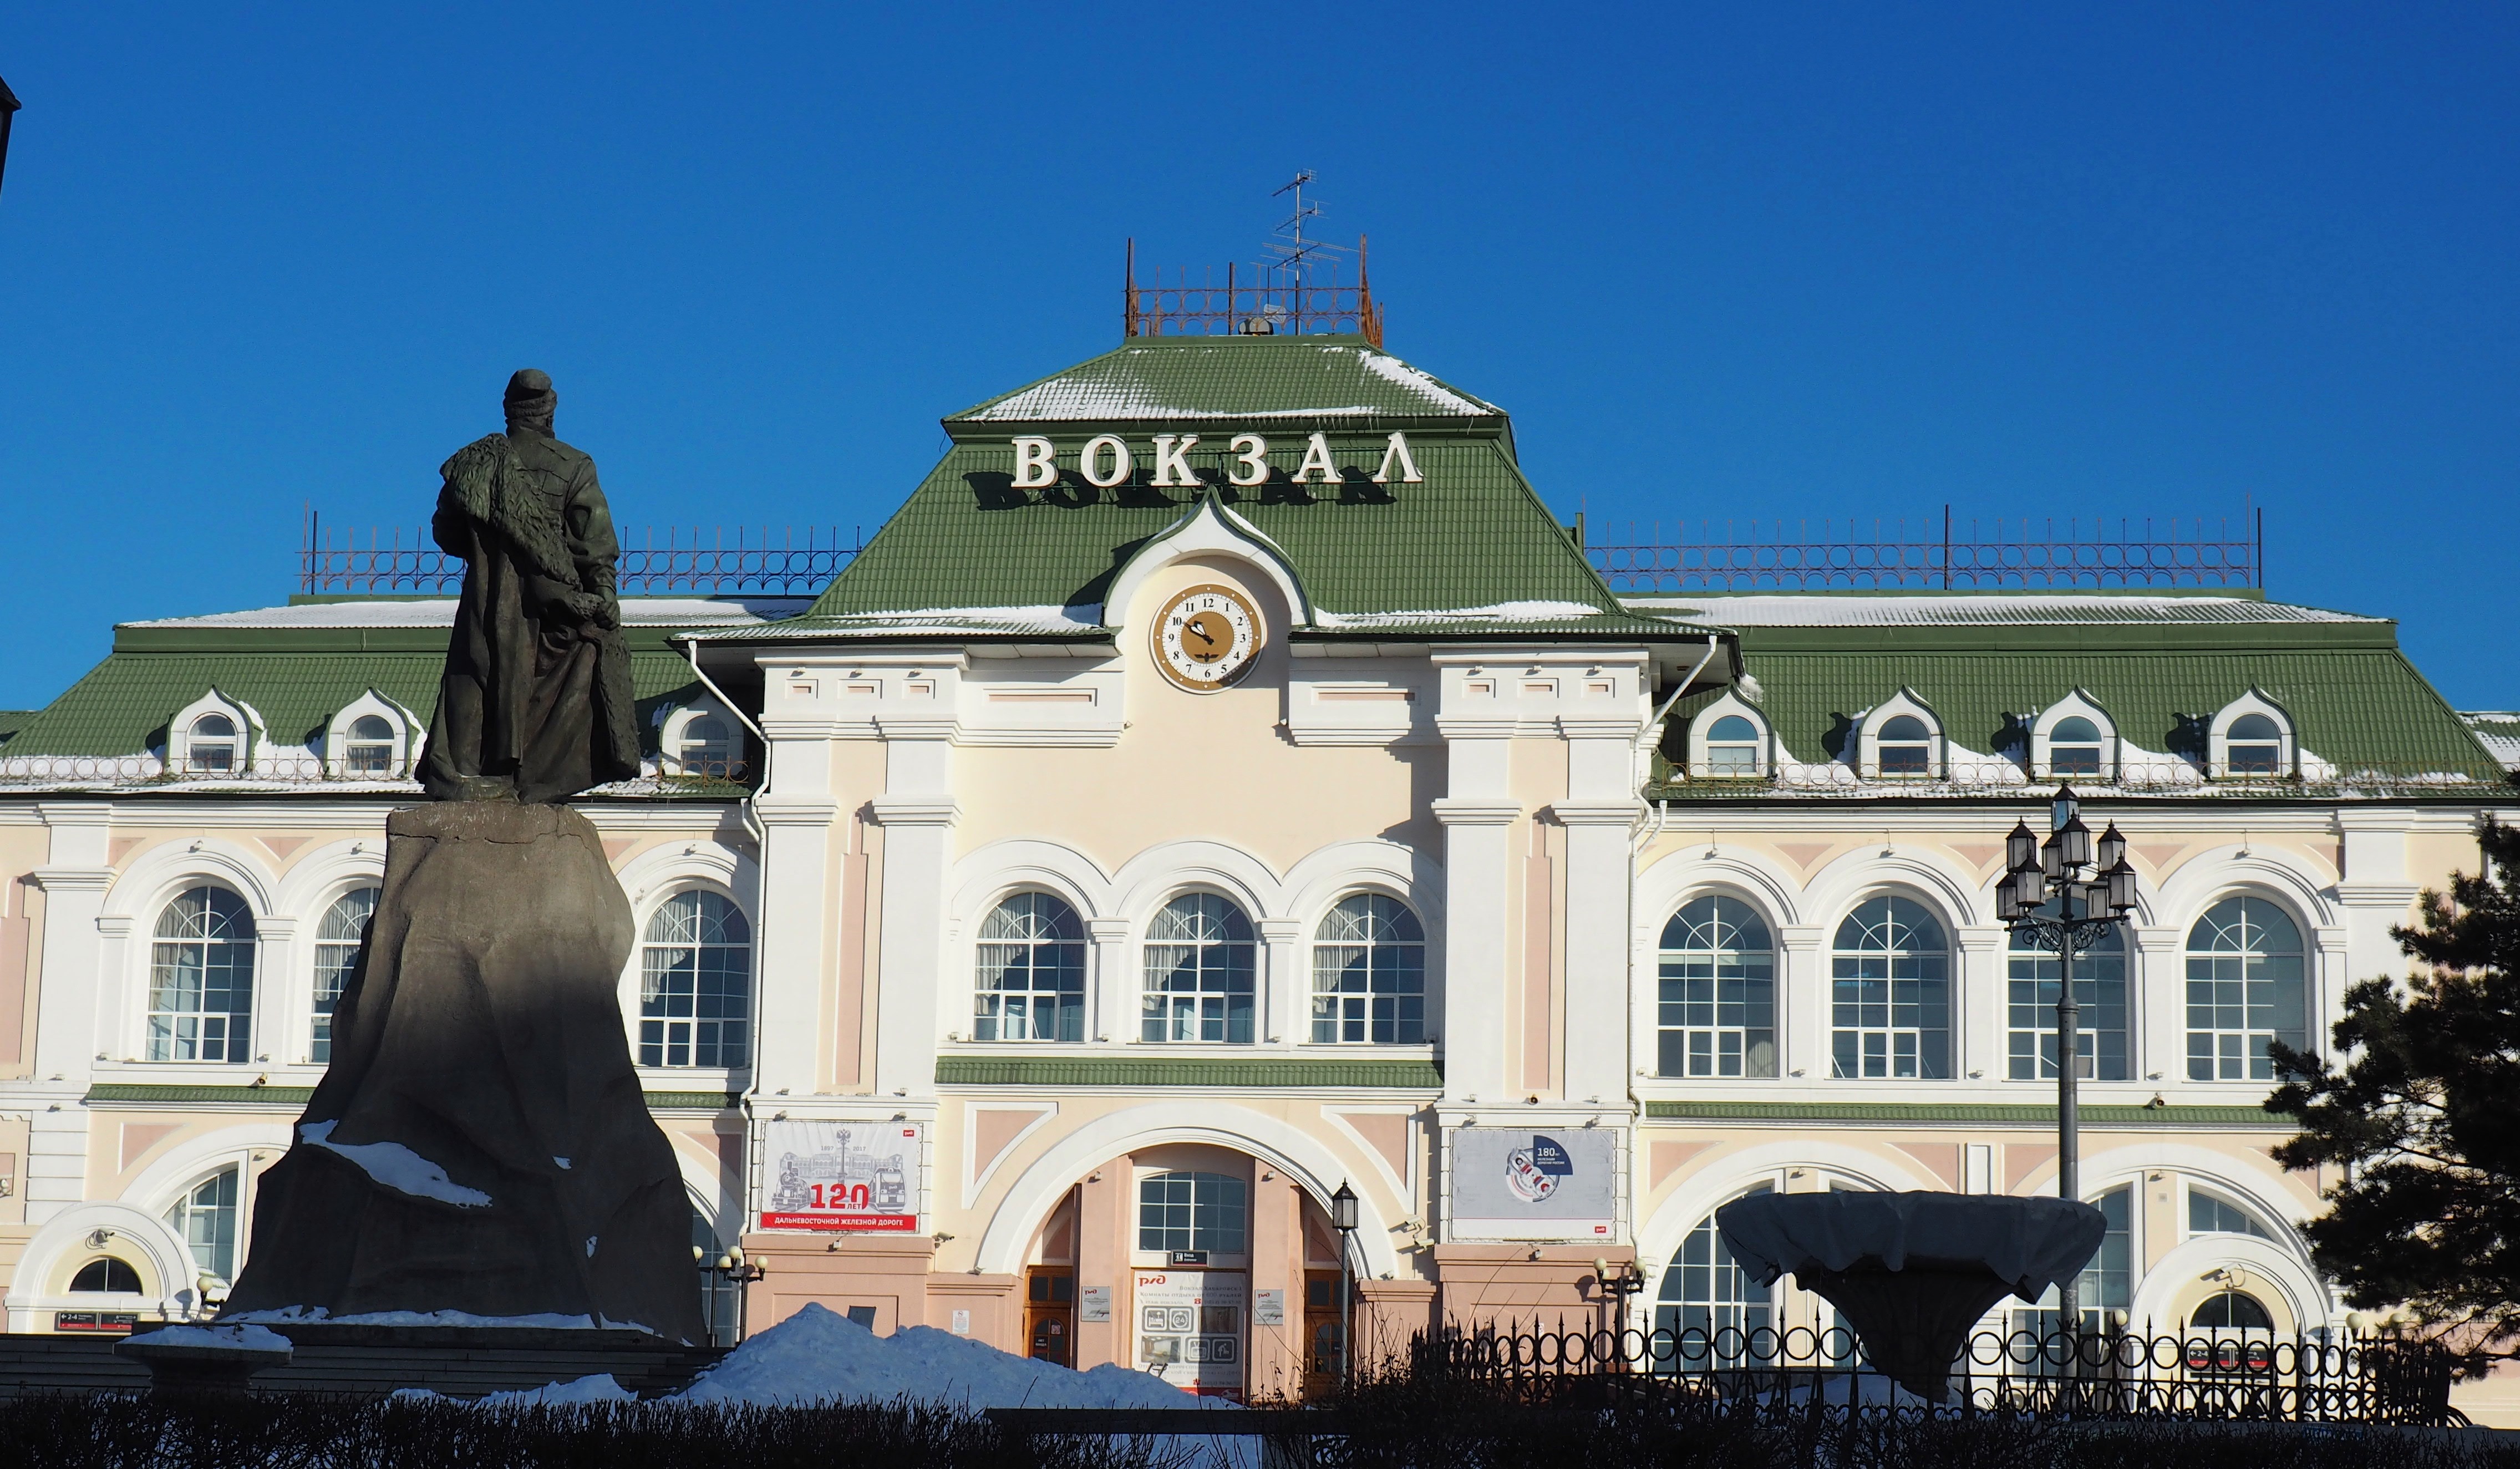 Хабаровский жд вокзал